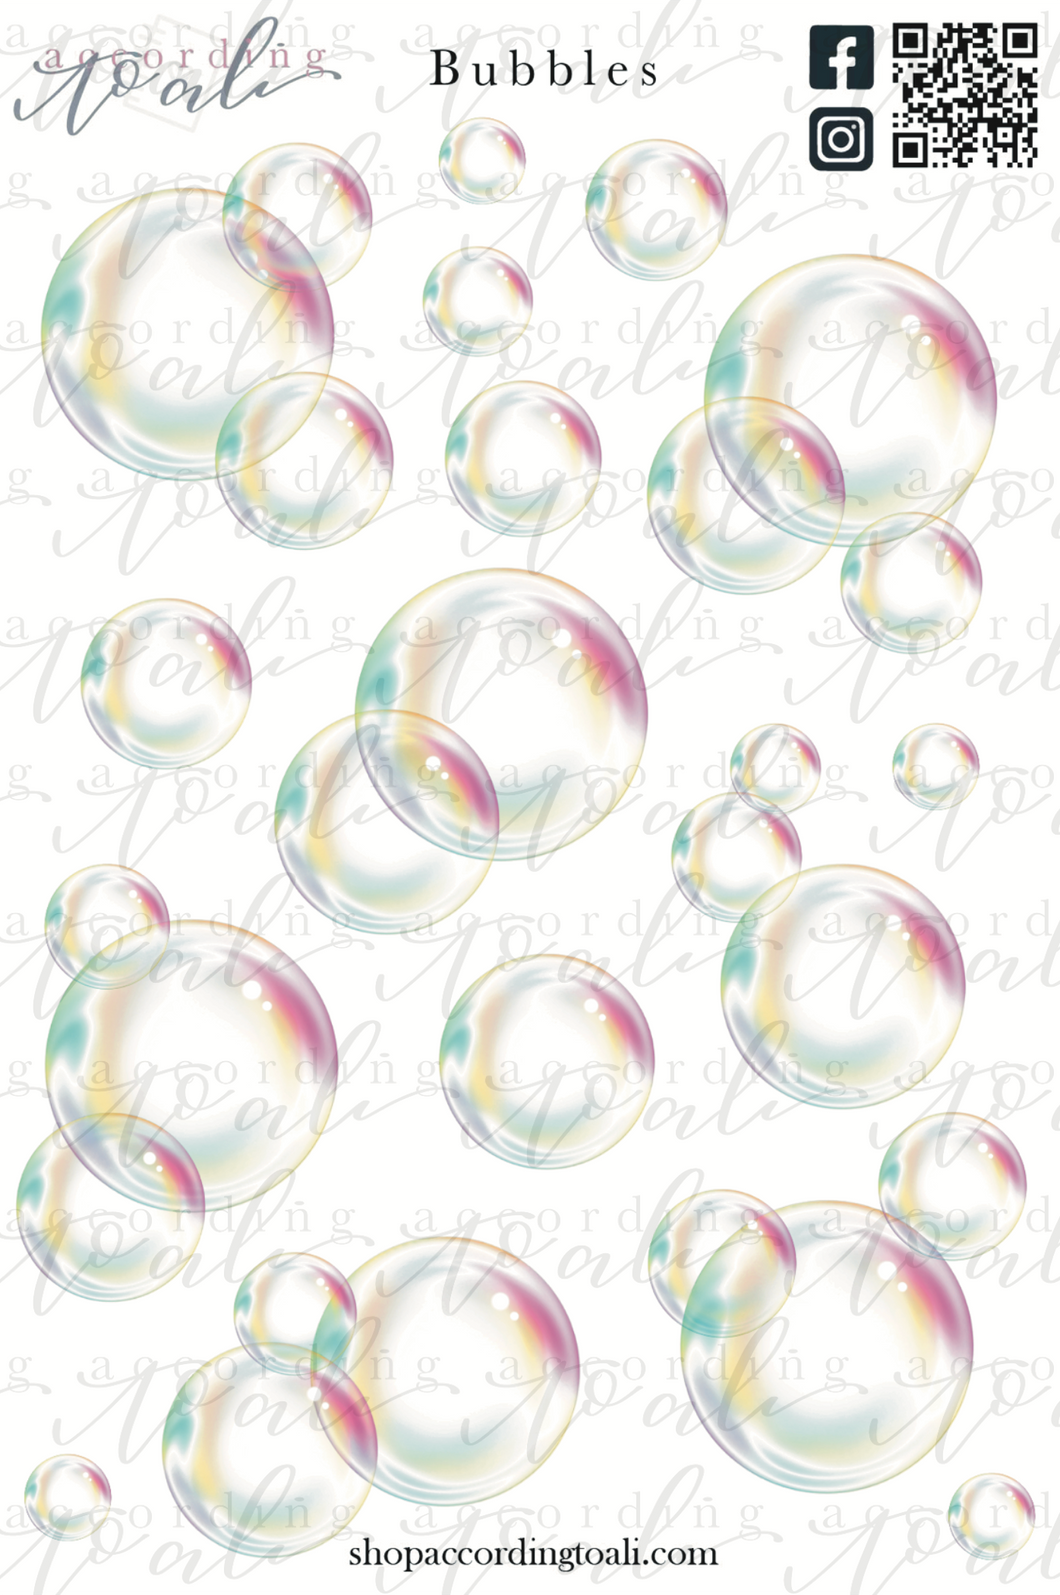 Bubbles Sticker Sheet